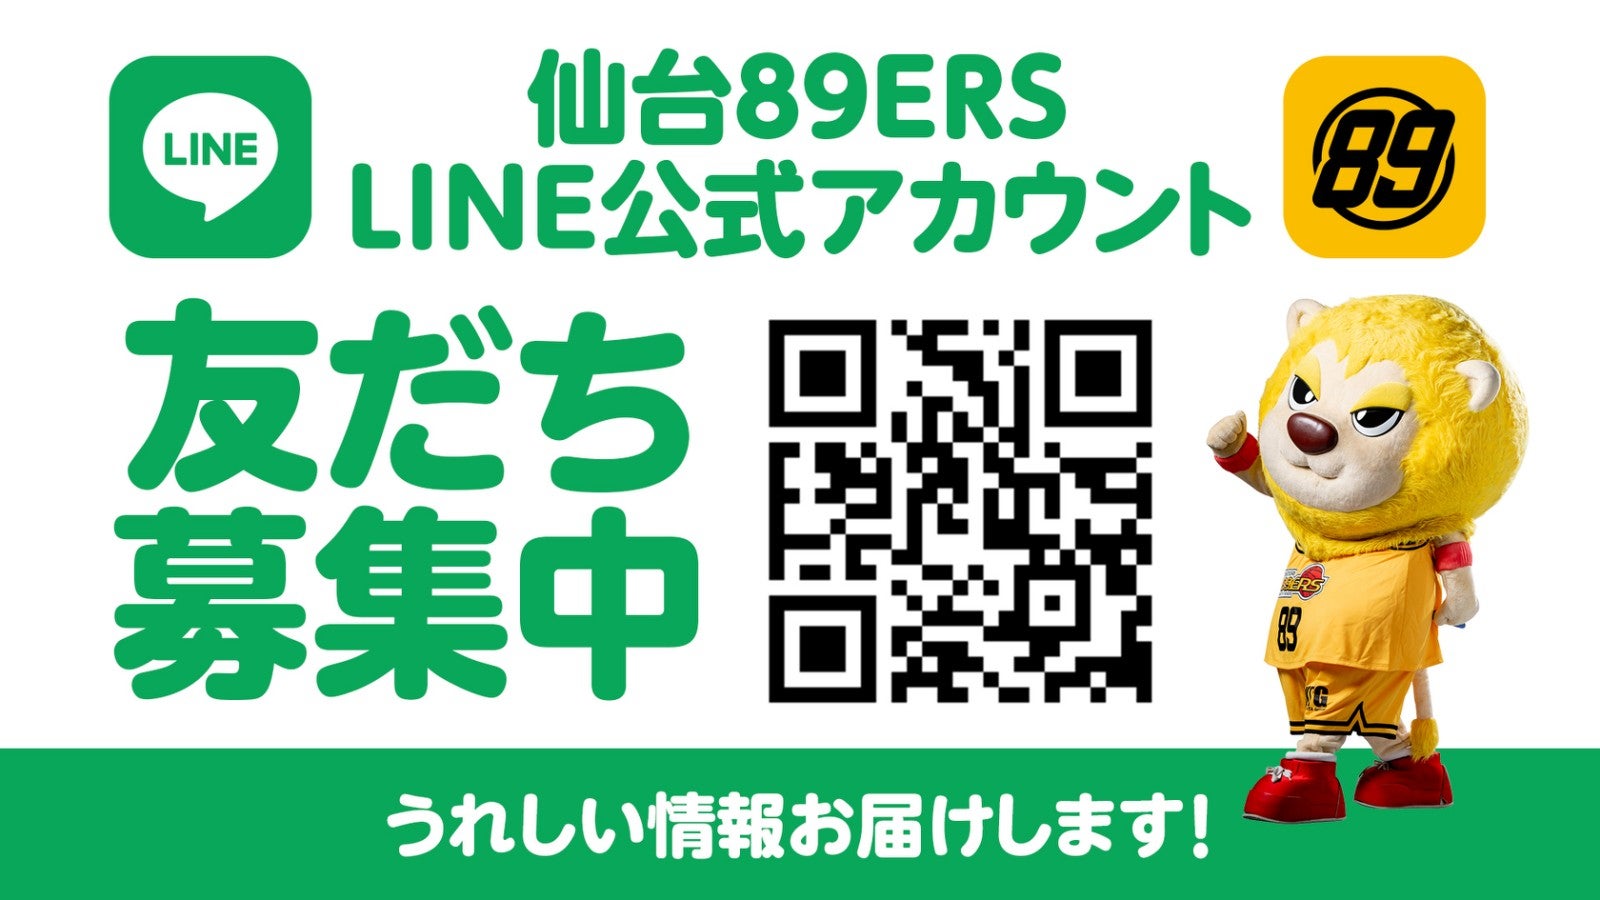 仙台89ERS LINE公式アカウント「友だち募集中」うれしい情報お届けします！